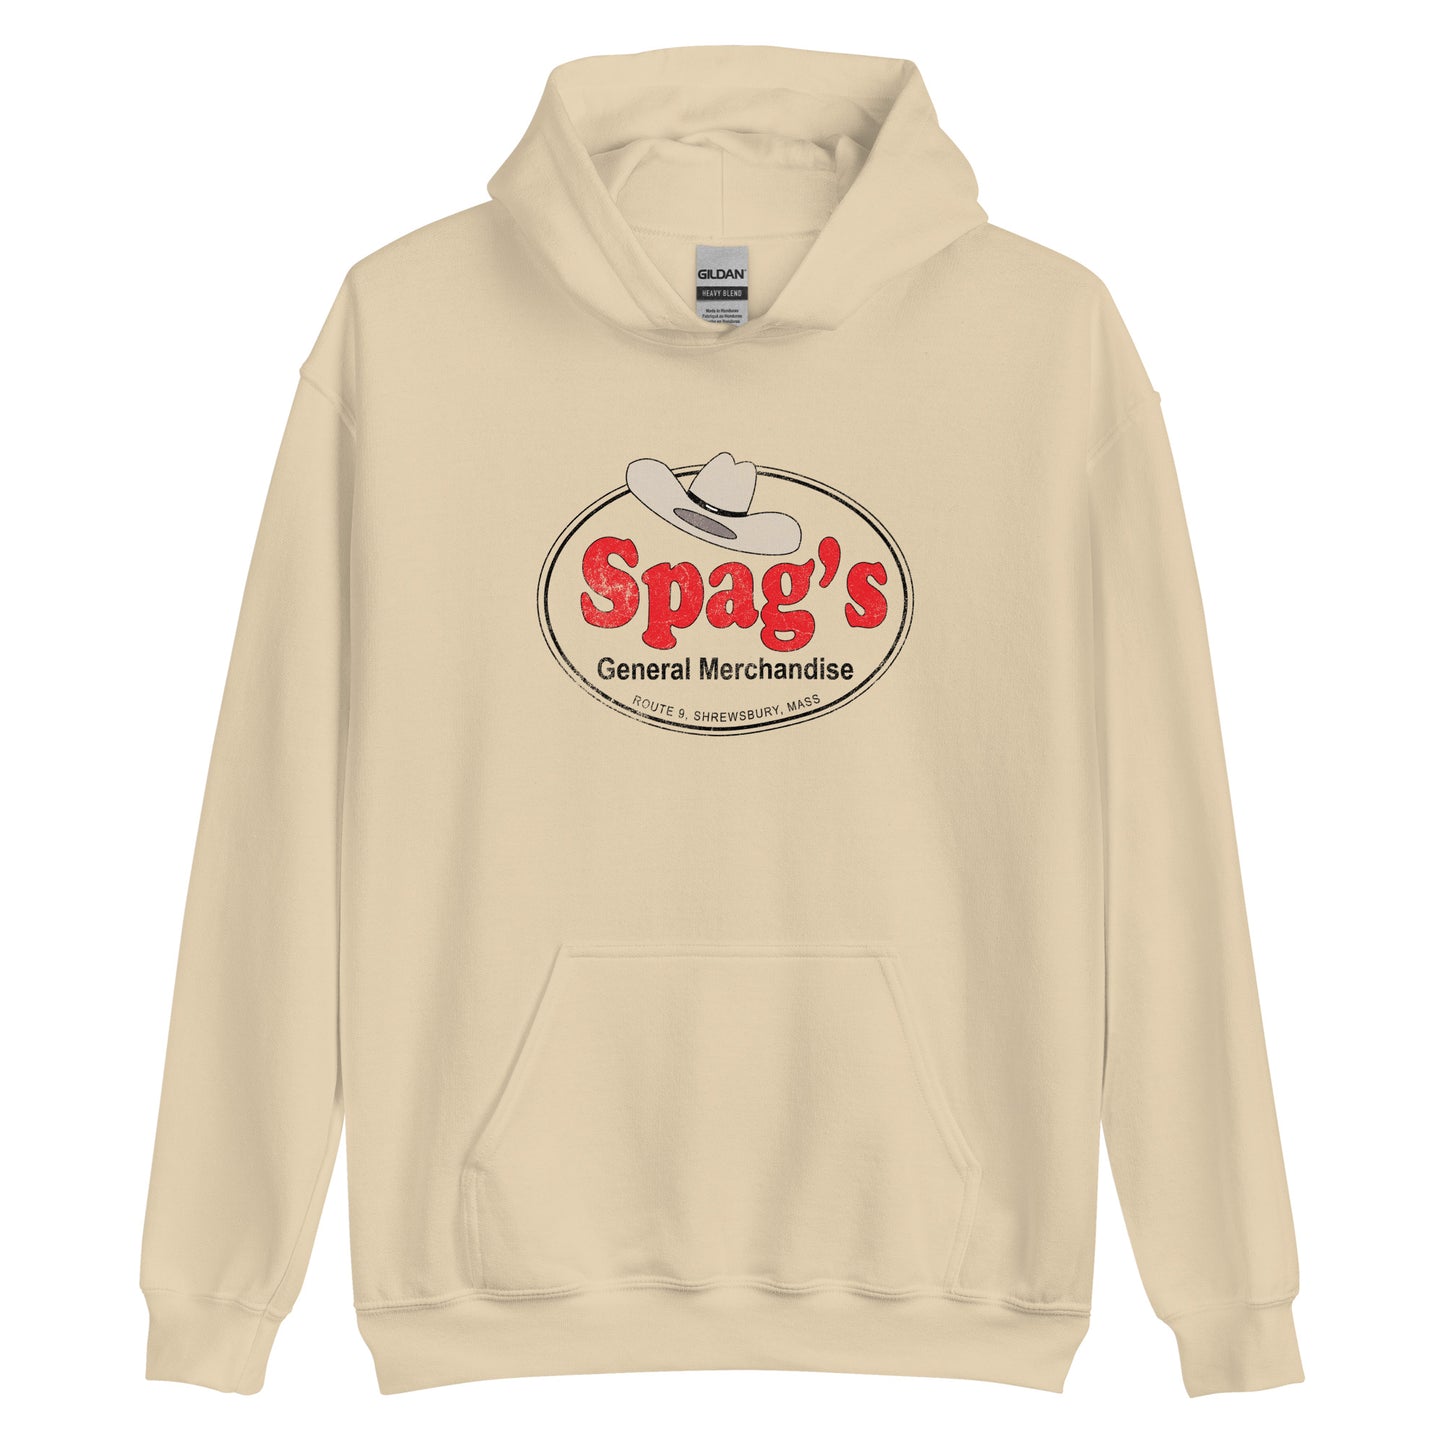 Spags Hoodie - Shrewsbury, MA | Retro Vintage style Graphic Sweatshirt